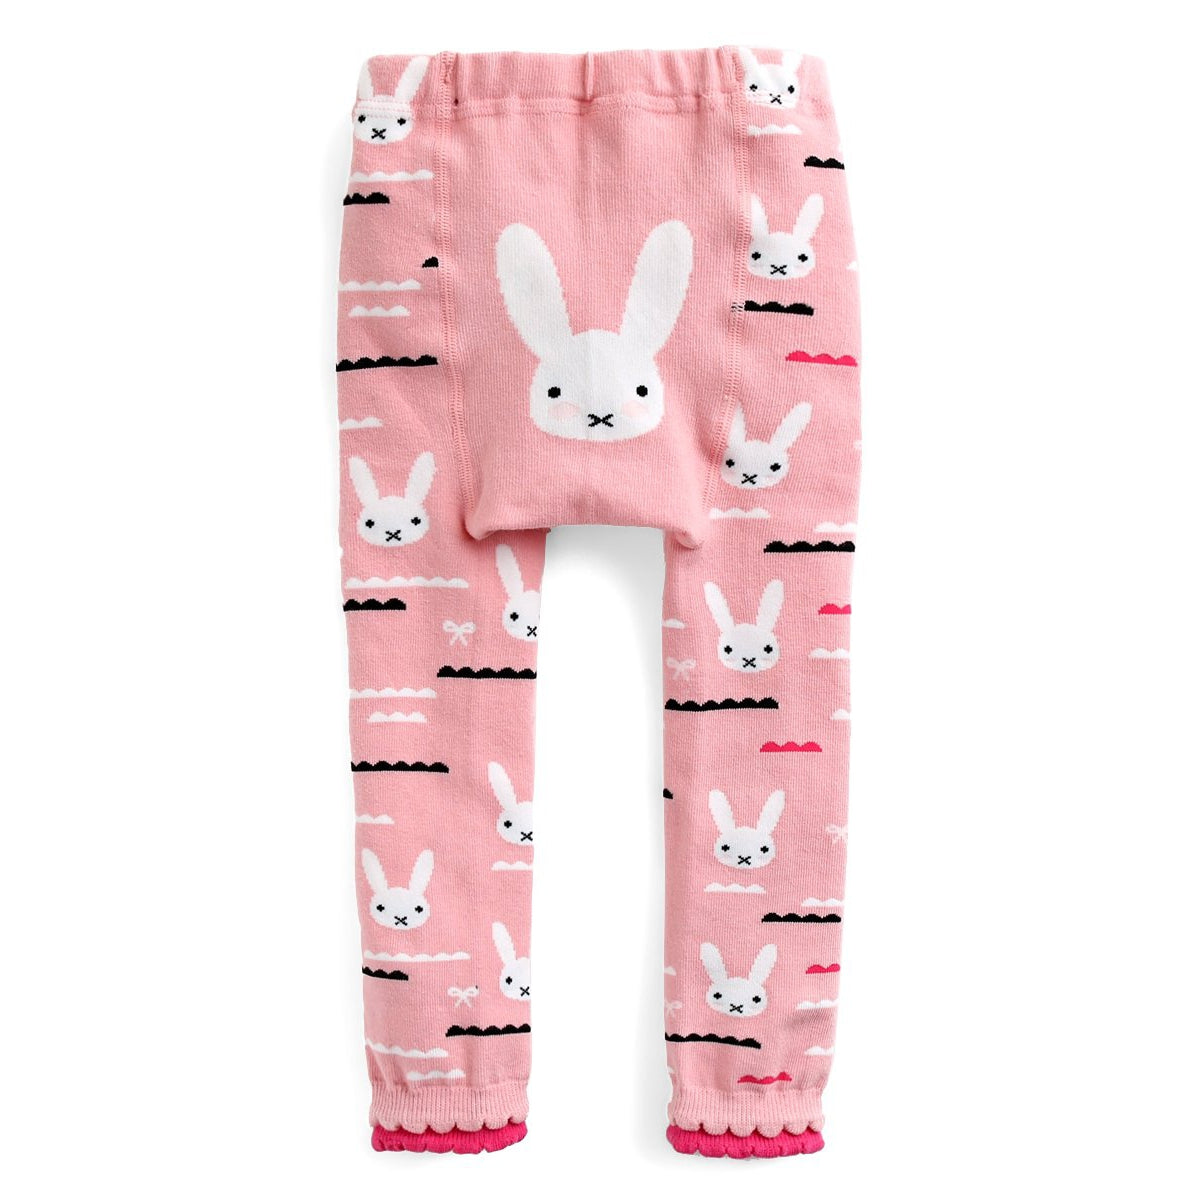 Baby Leggings - Pink Bunny - HoneyBug 